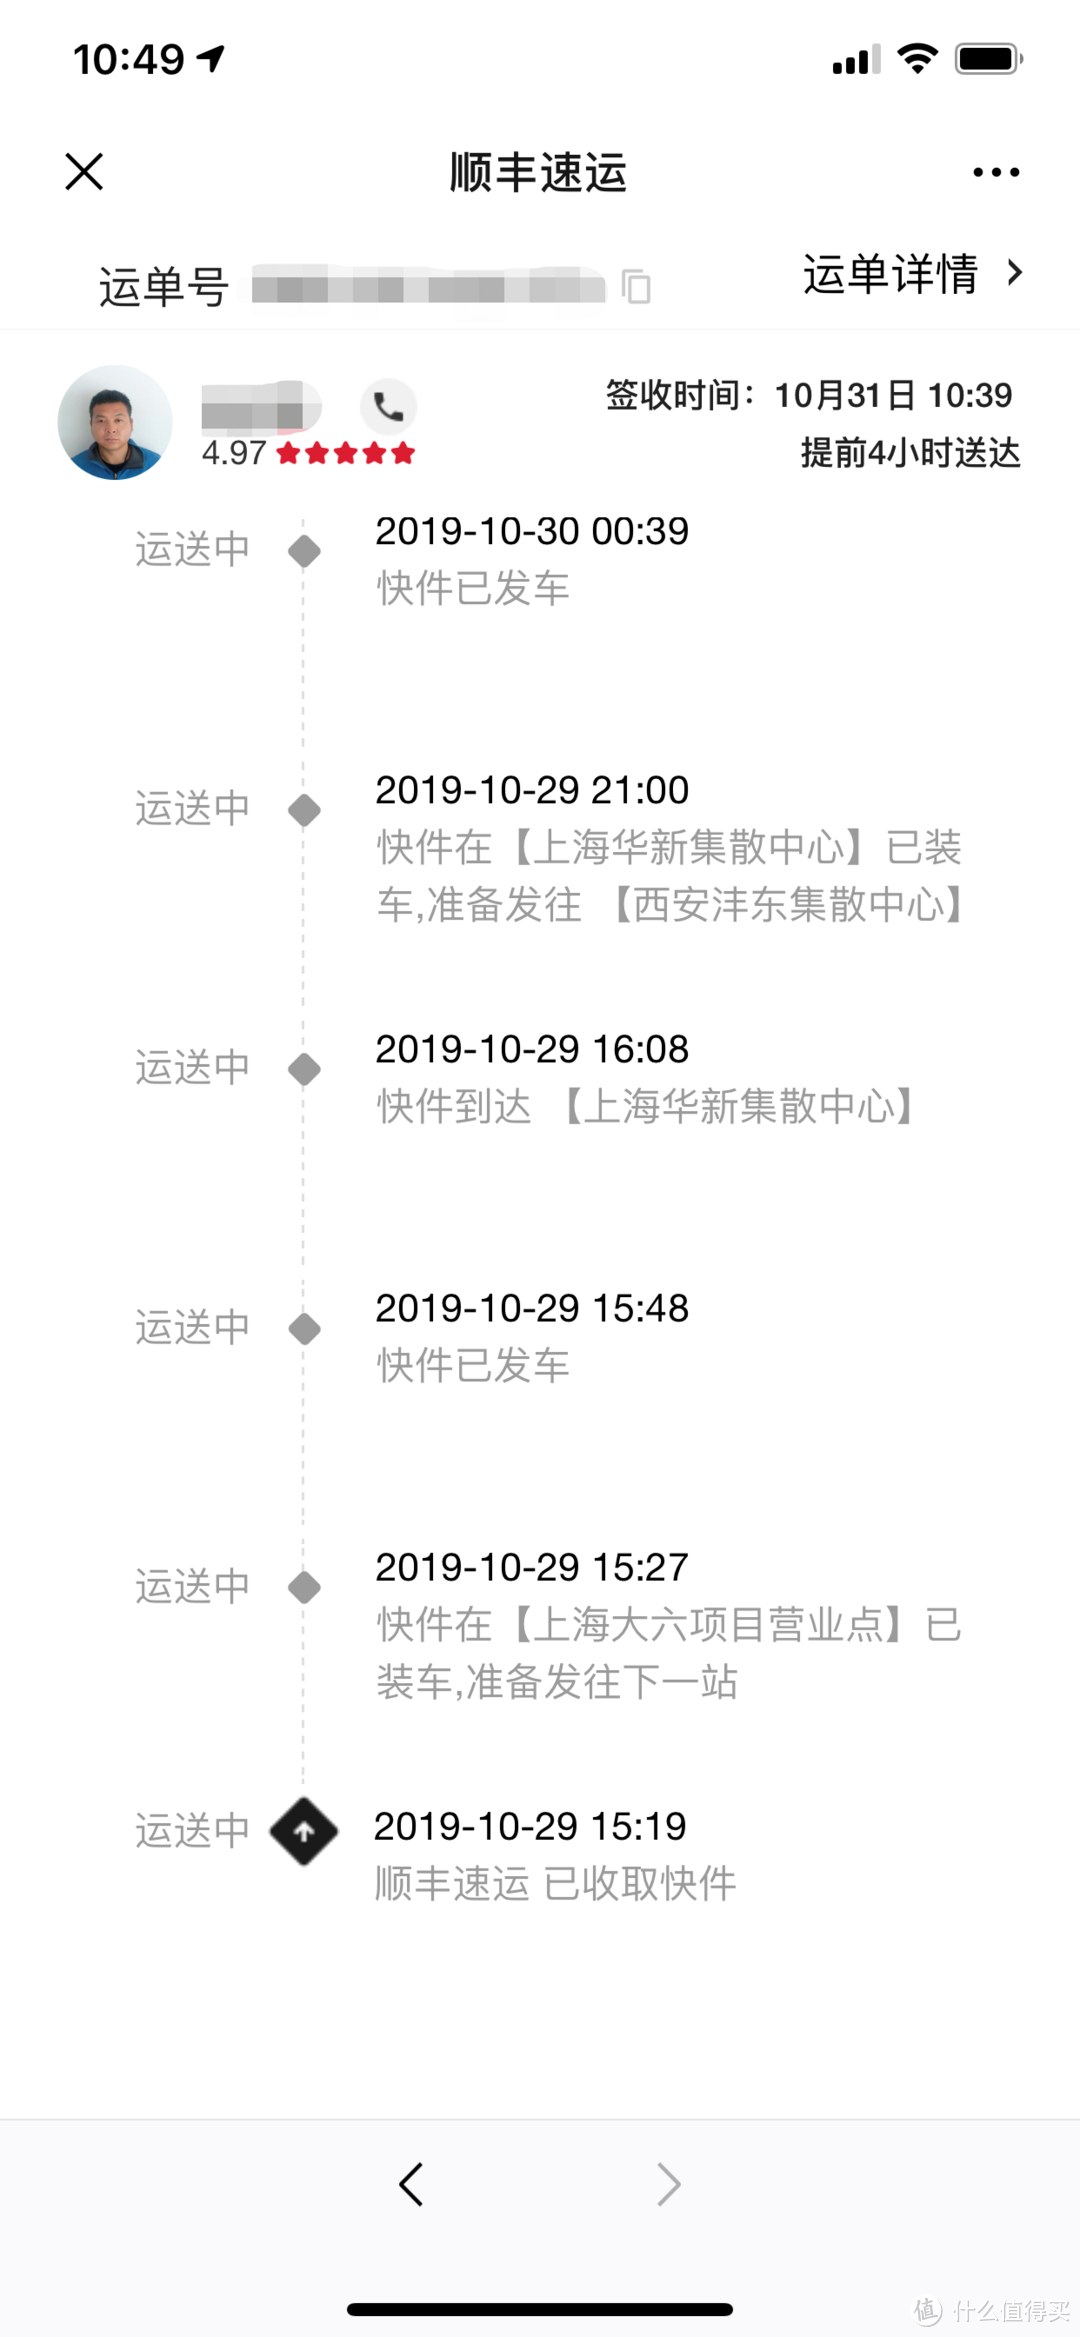 一大早起来就在等这个短信，上海到西安，快递小哥送来的很及时，顺丰还是让人放心。